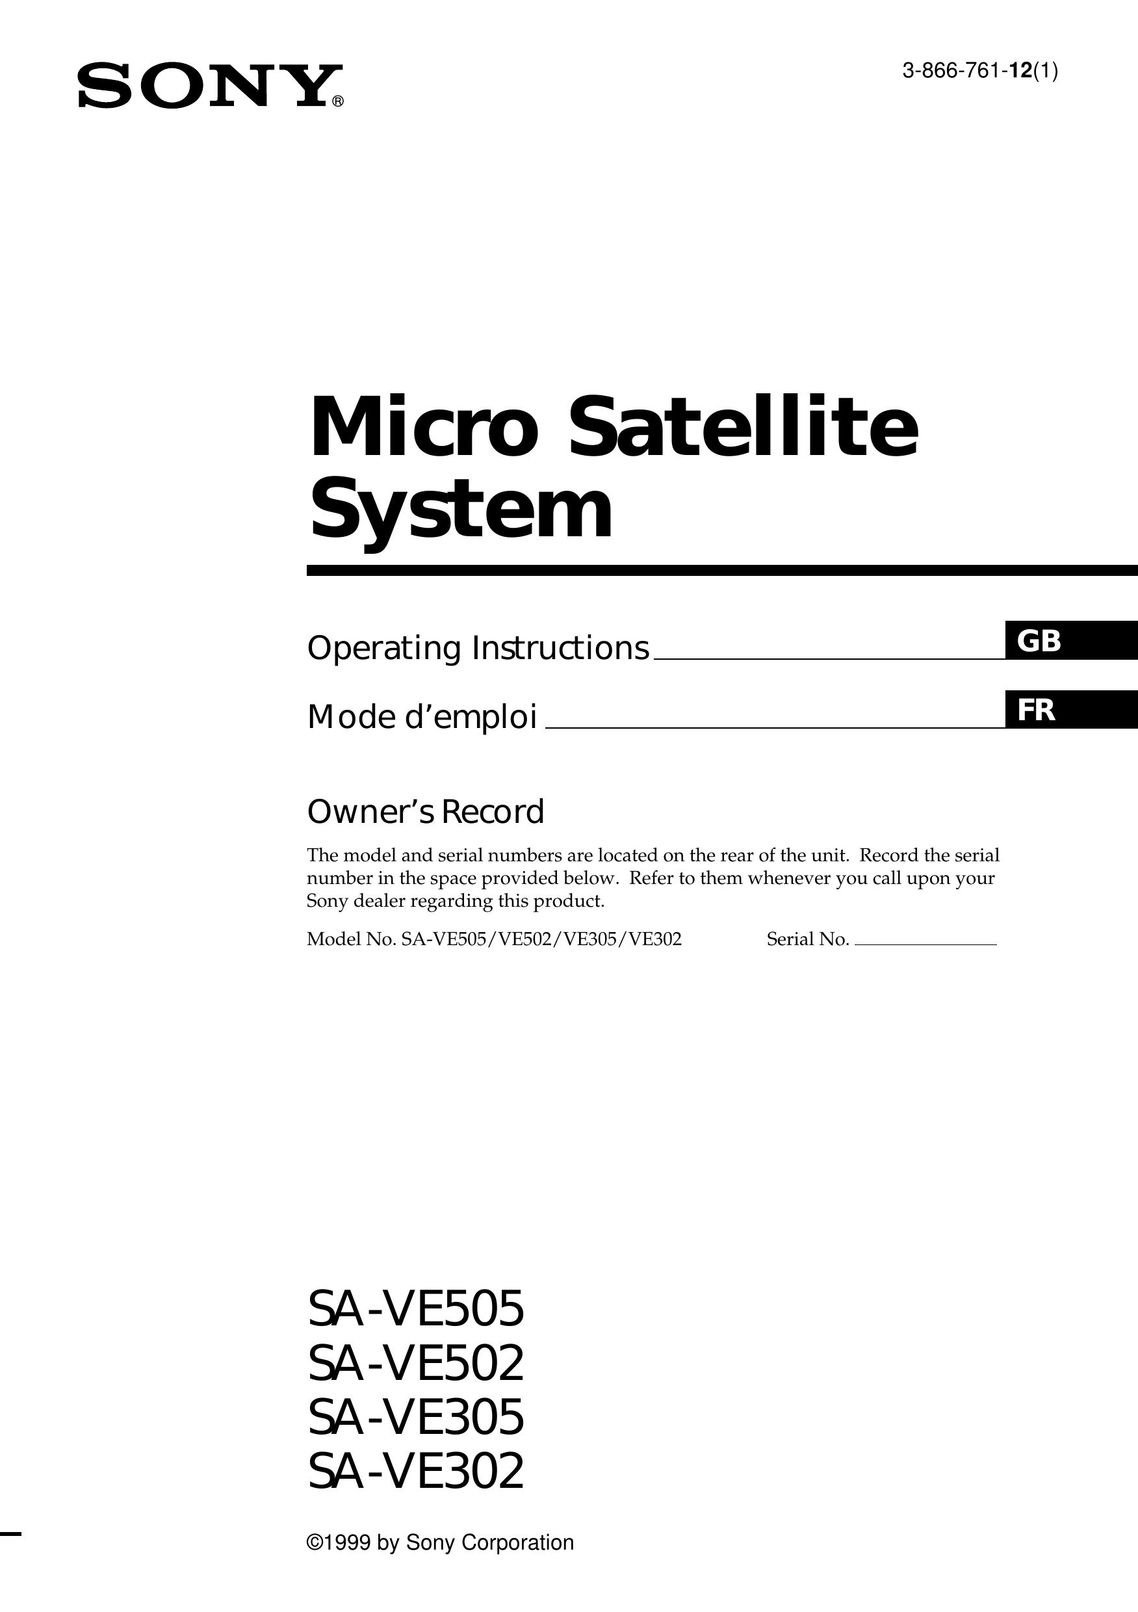 Sony SA-VE502 Satellite TV System User Manual